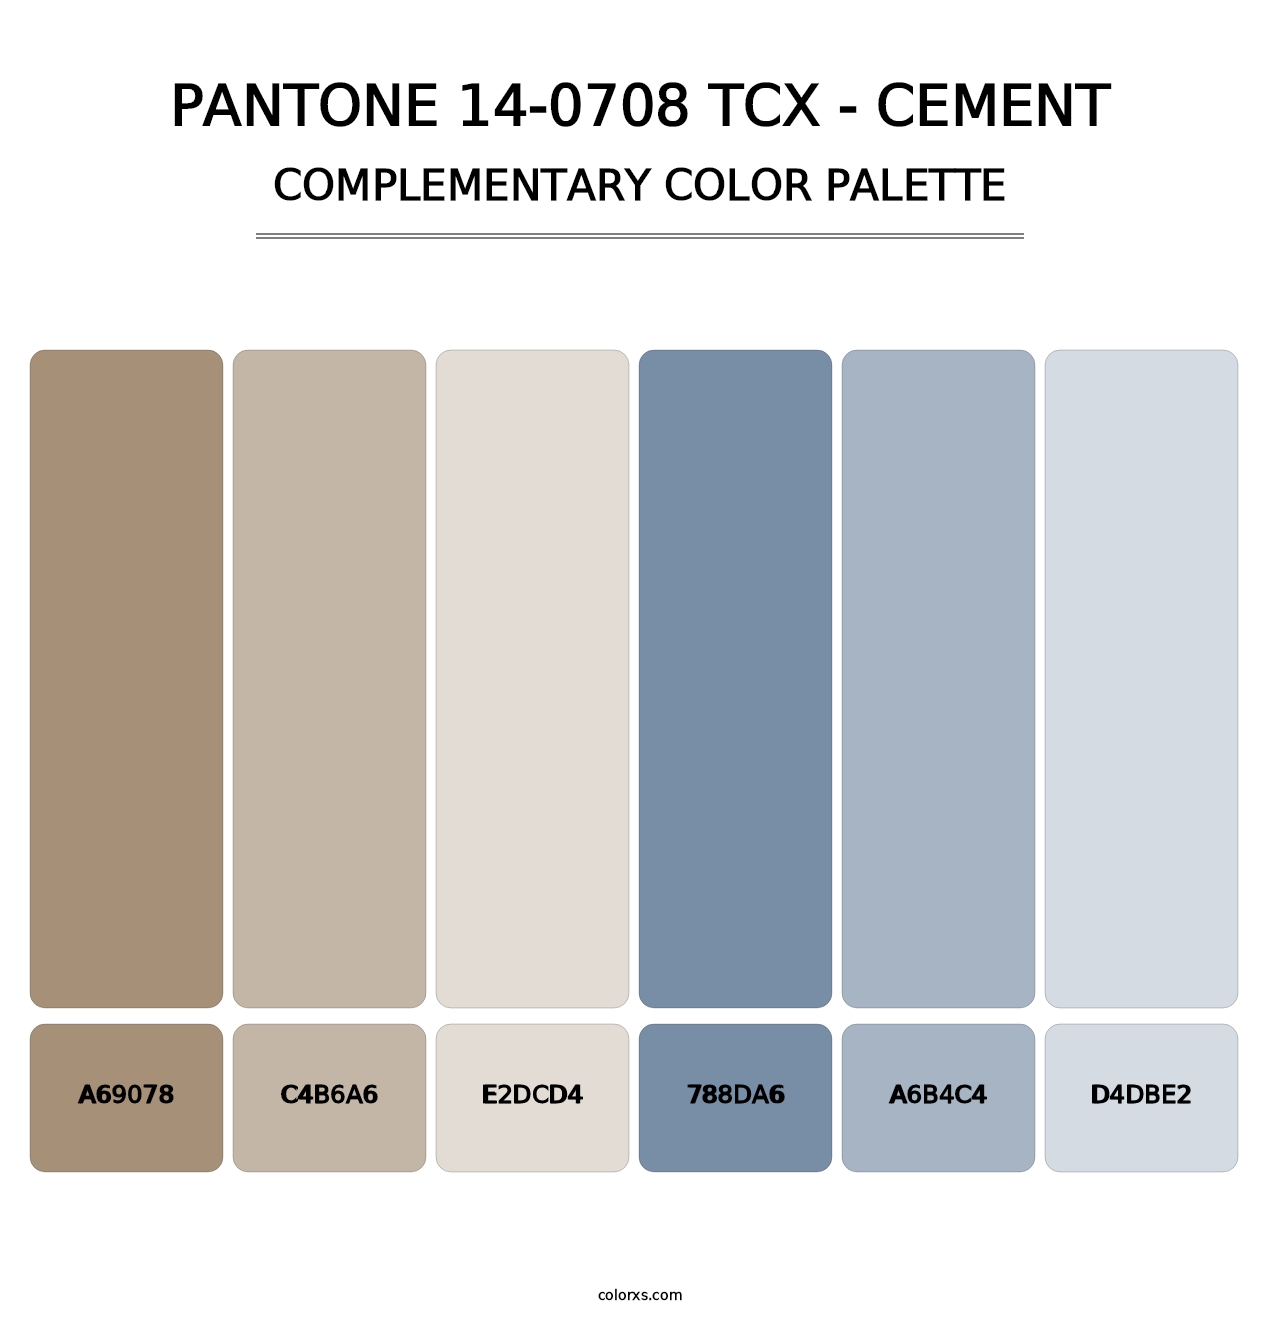 PANTONE 14-0708 TCX - Cement - Complementary Color Palette